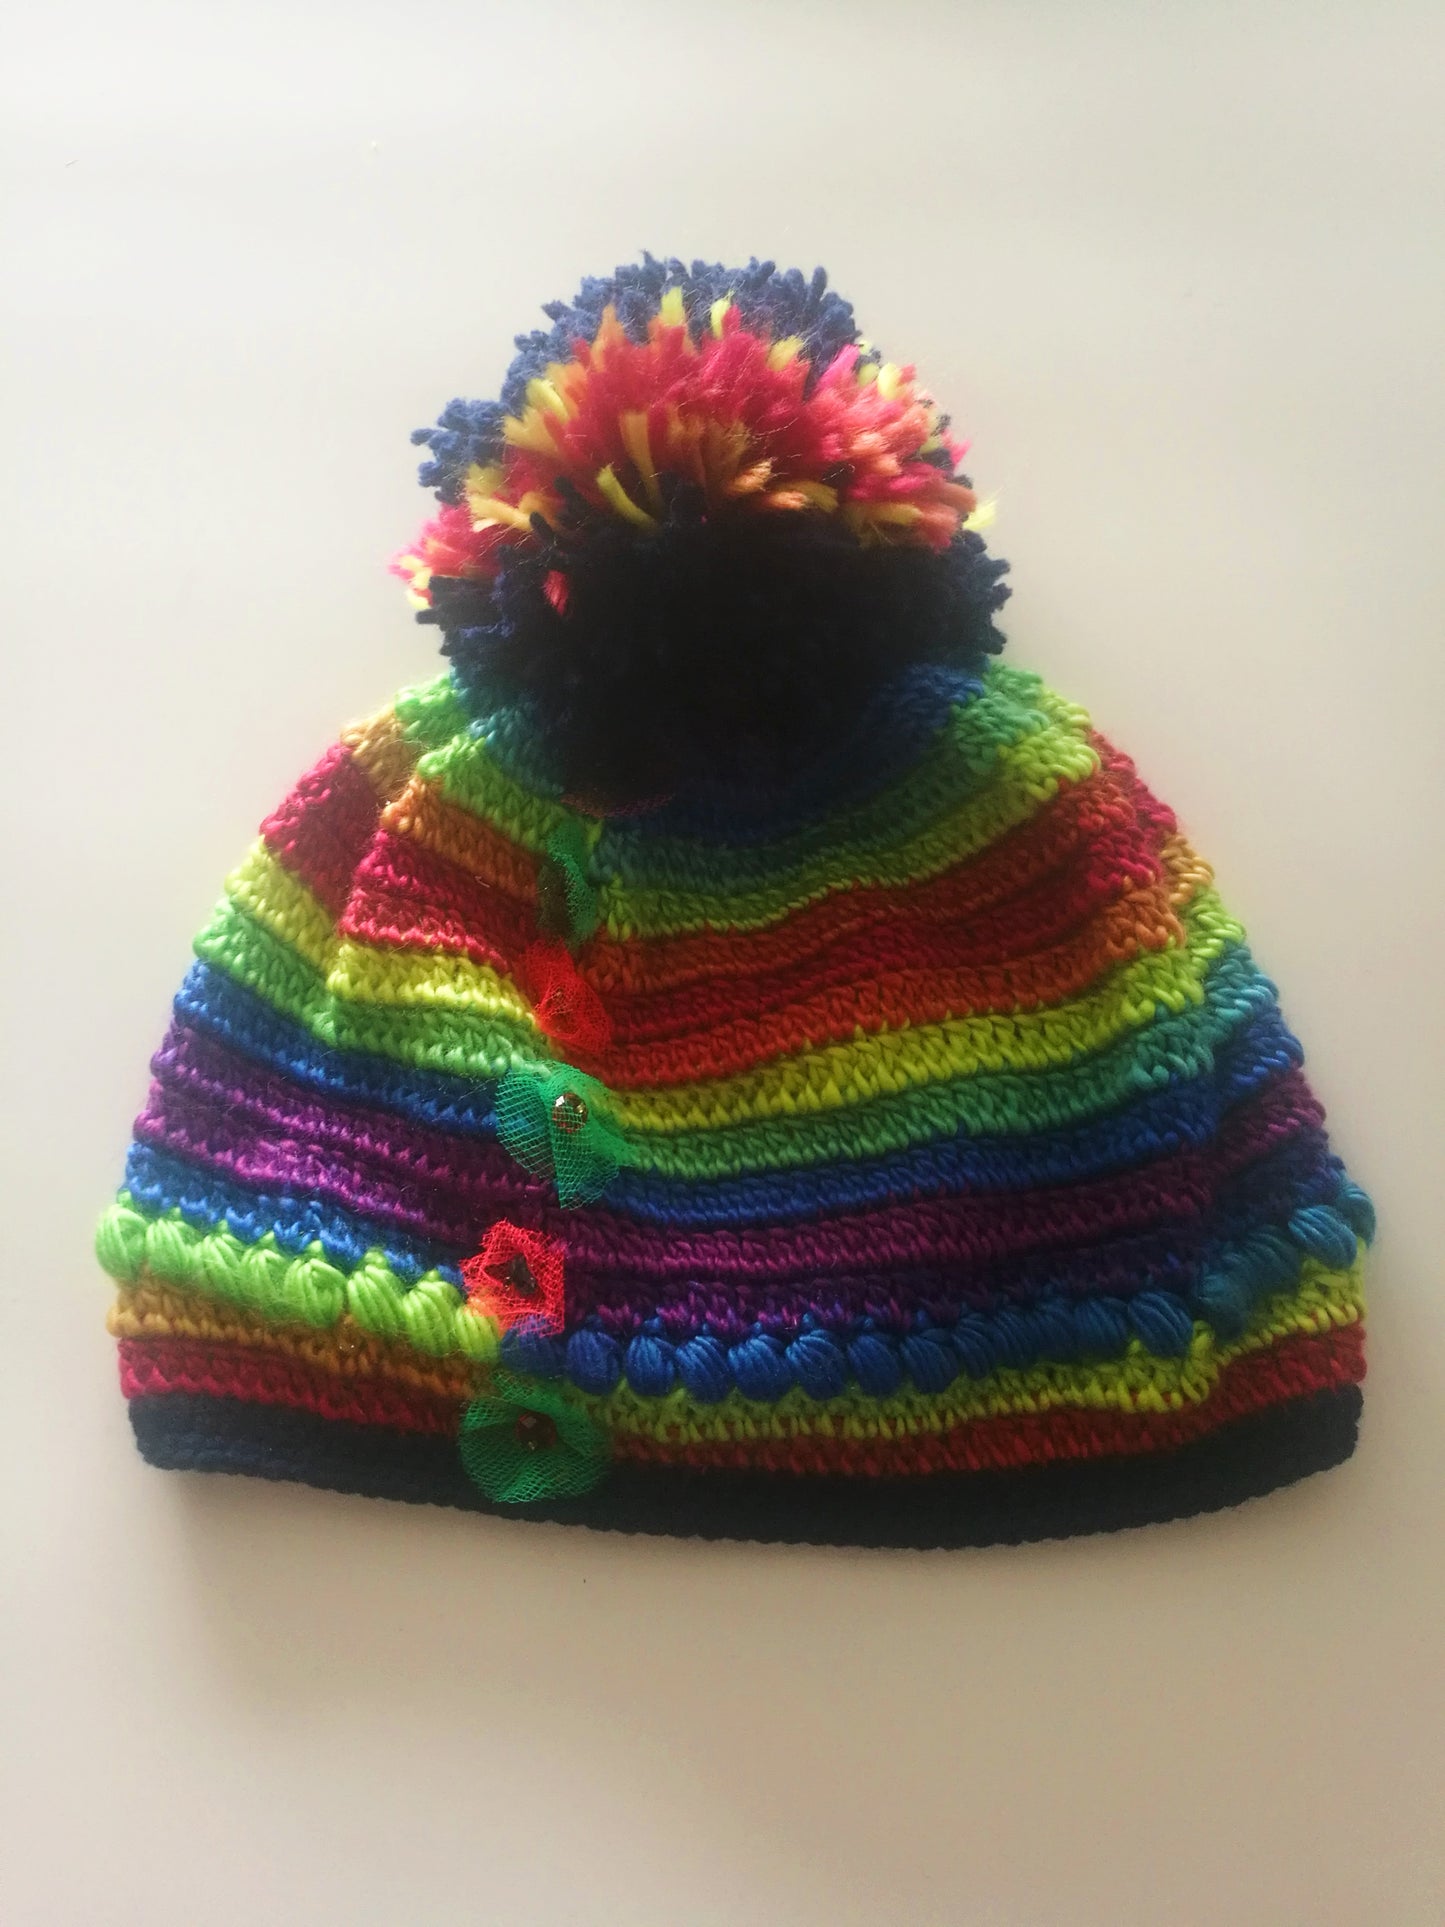 Pom Pom Knit Wool Beanie for Women Handmade Colourful Warm Hat